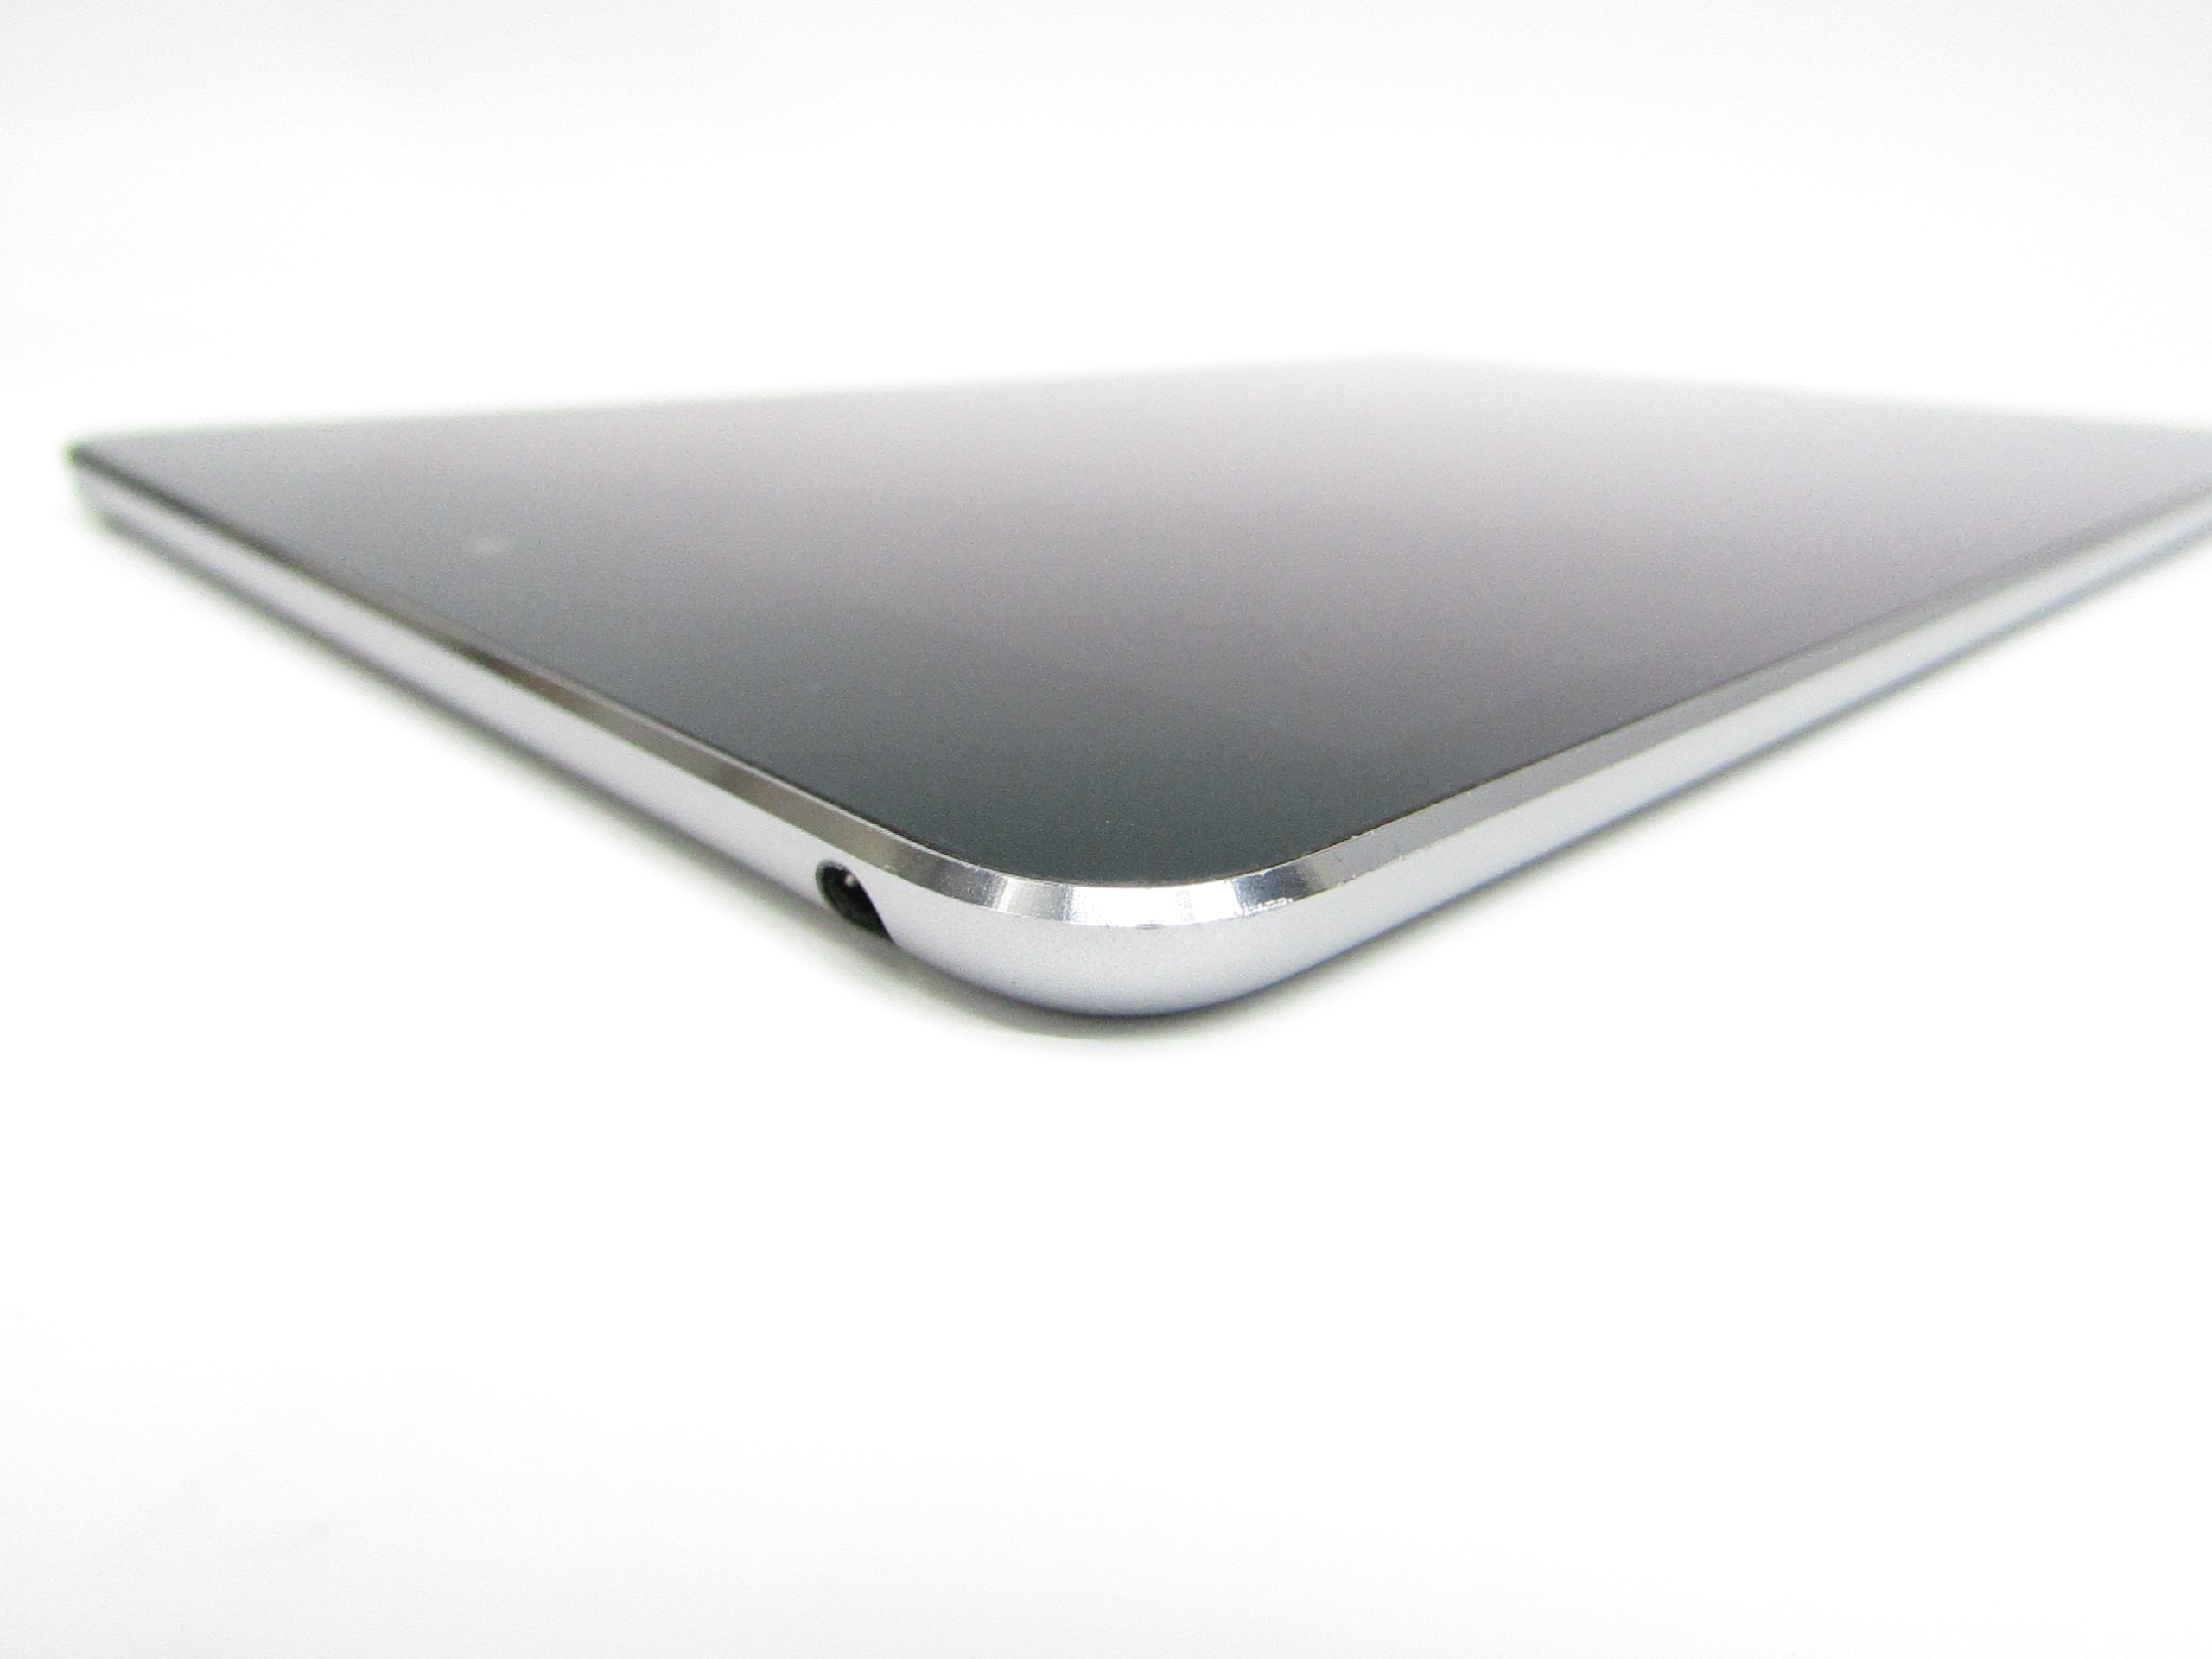 Tablet Apple Ipad Mini 128GB 7.9” Silver